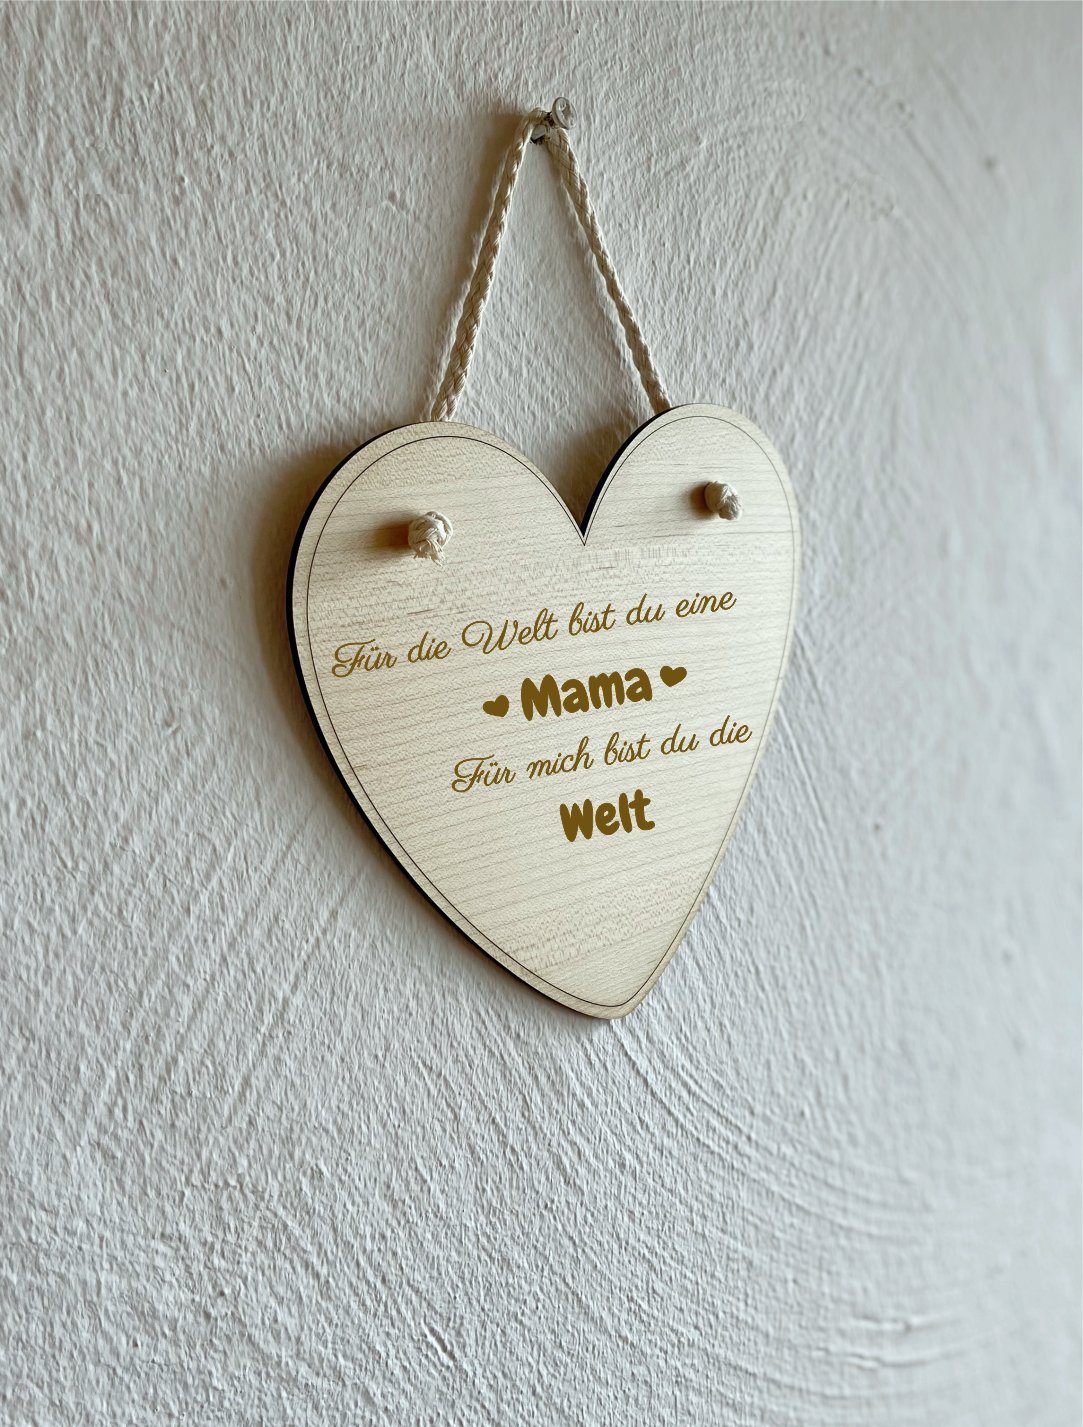 Mama für aufhängen Deko eine für mich Welt ''für bist zum Muttertag, du Welt'', die Geburtstag Geschenkidee Herz Dekohänger KS die Laserdesign Frauen,